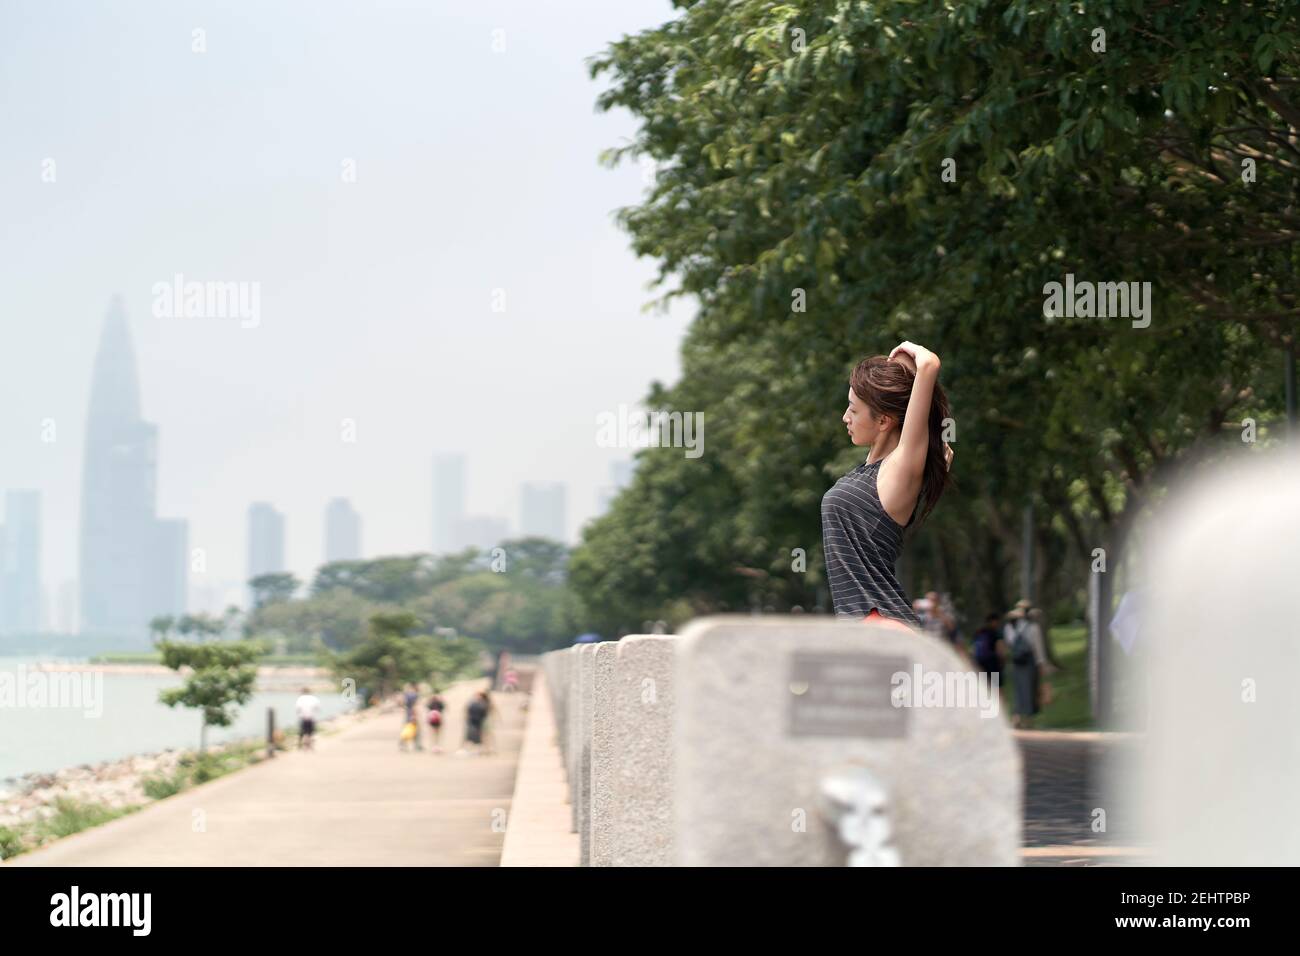 giovane donna asiatica in abbigliamento sportivo che si riscalda prima di allenarsi all'aperto nel parco sul mare Foto Stock